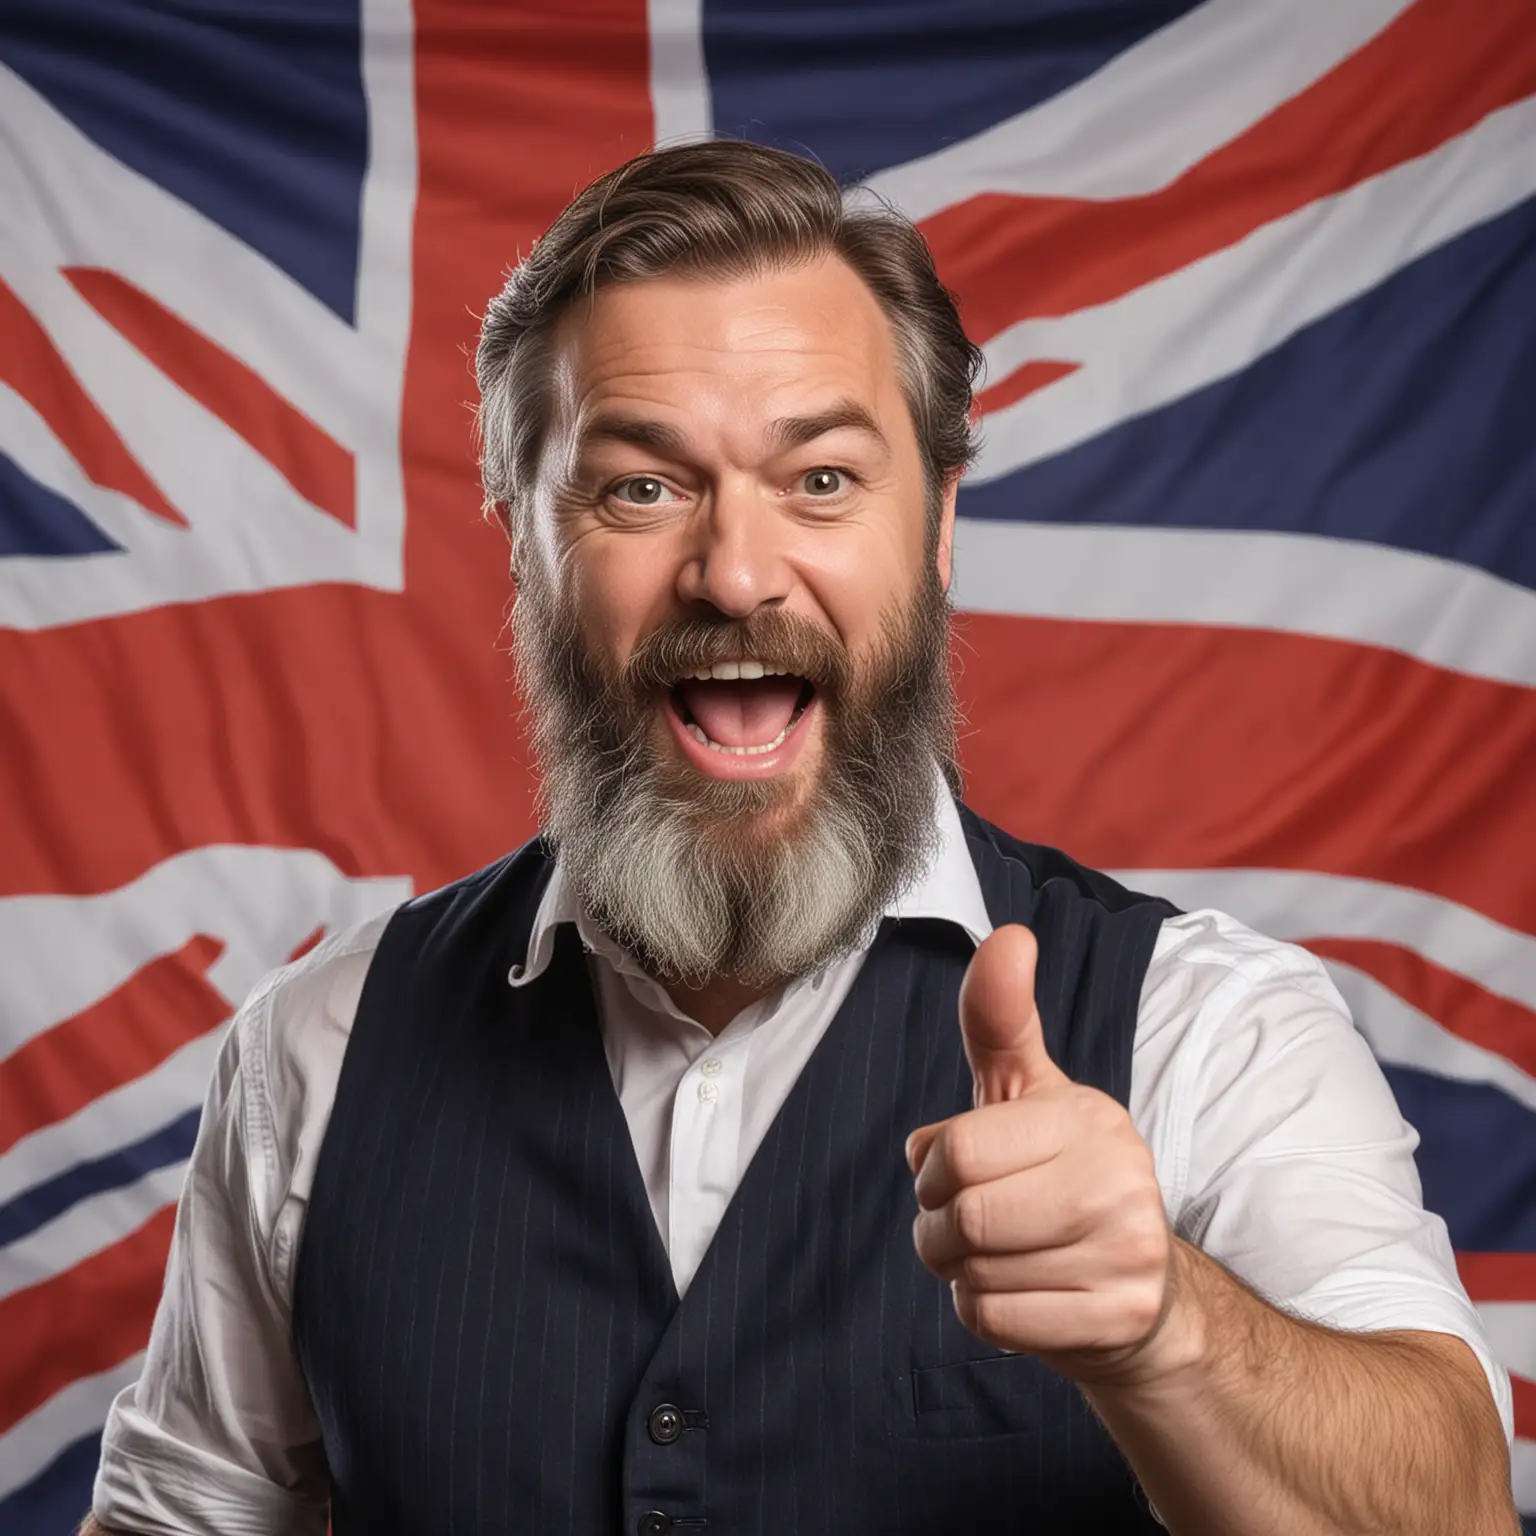 zdjęcie przedstawia mężczyznę w średnim wieku z brodą mówiącego po angielsku w tle znajduje się brytyjska flaga . Mężczyzna gestykuluję rękoma i jest zadowolony z sukcesu